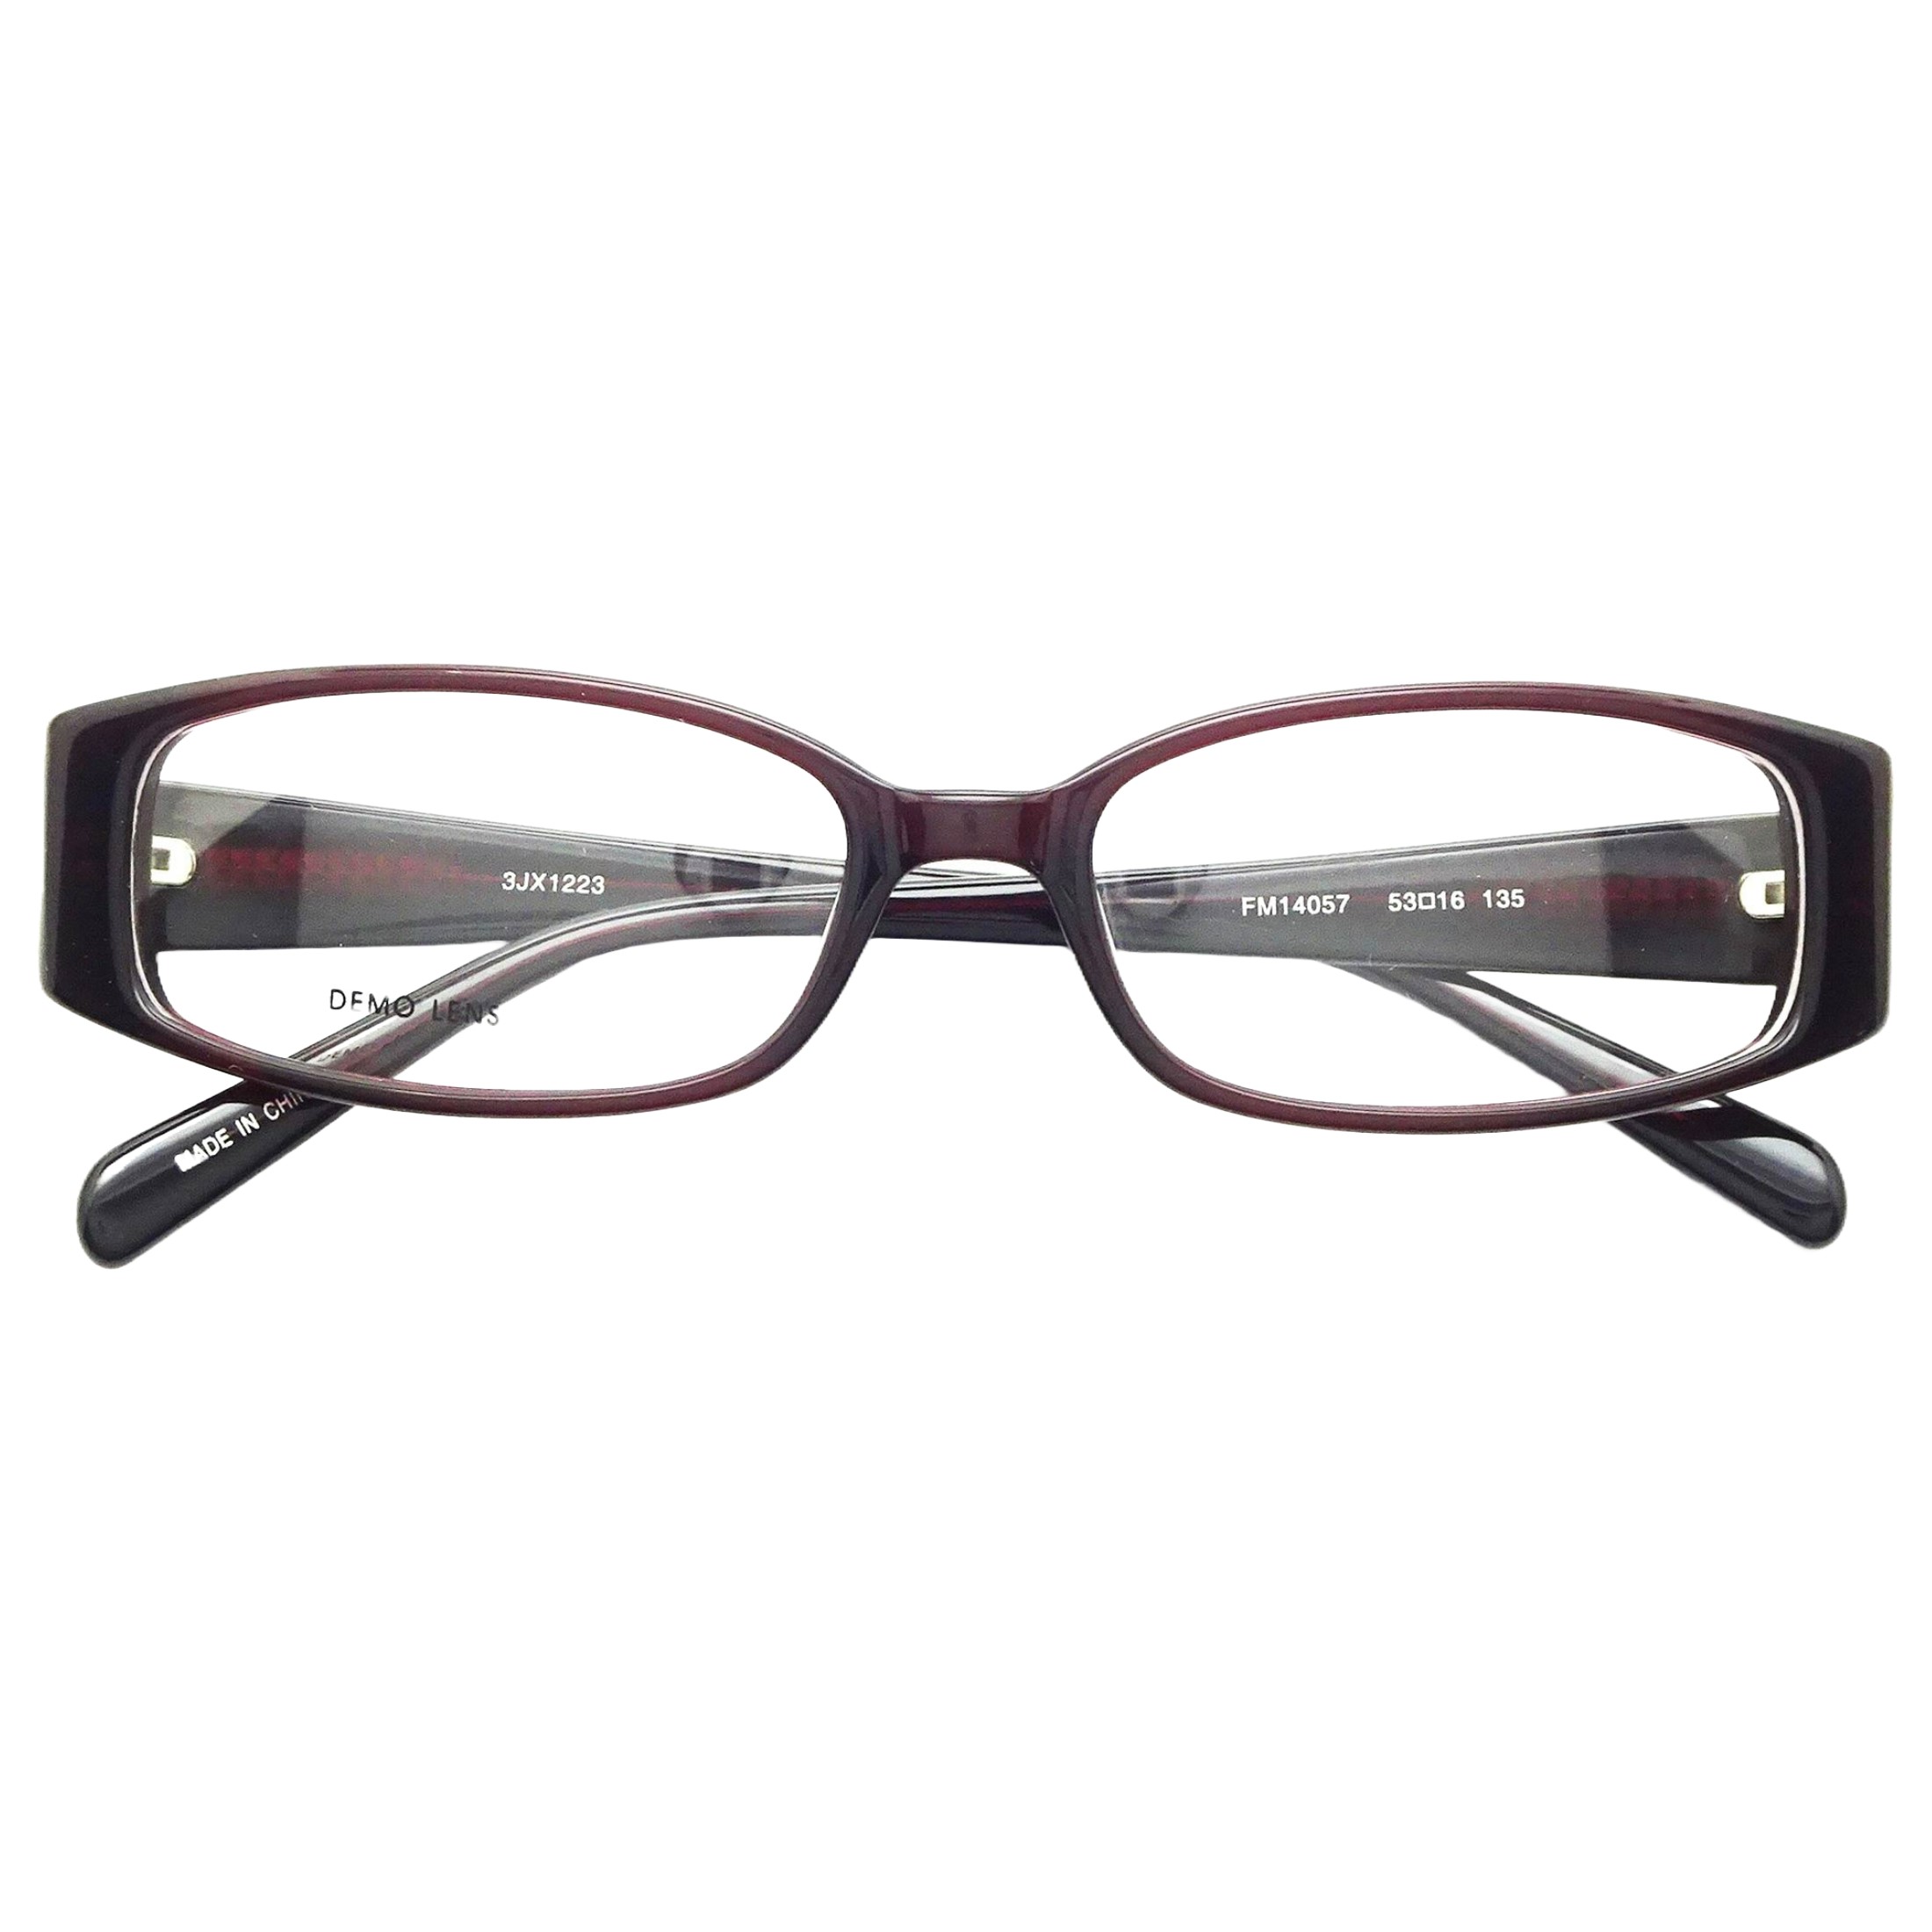 Contour Women's Rx'able Eyeglasses, FM14057 Burg. - image 1 of 6